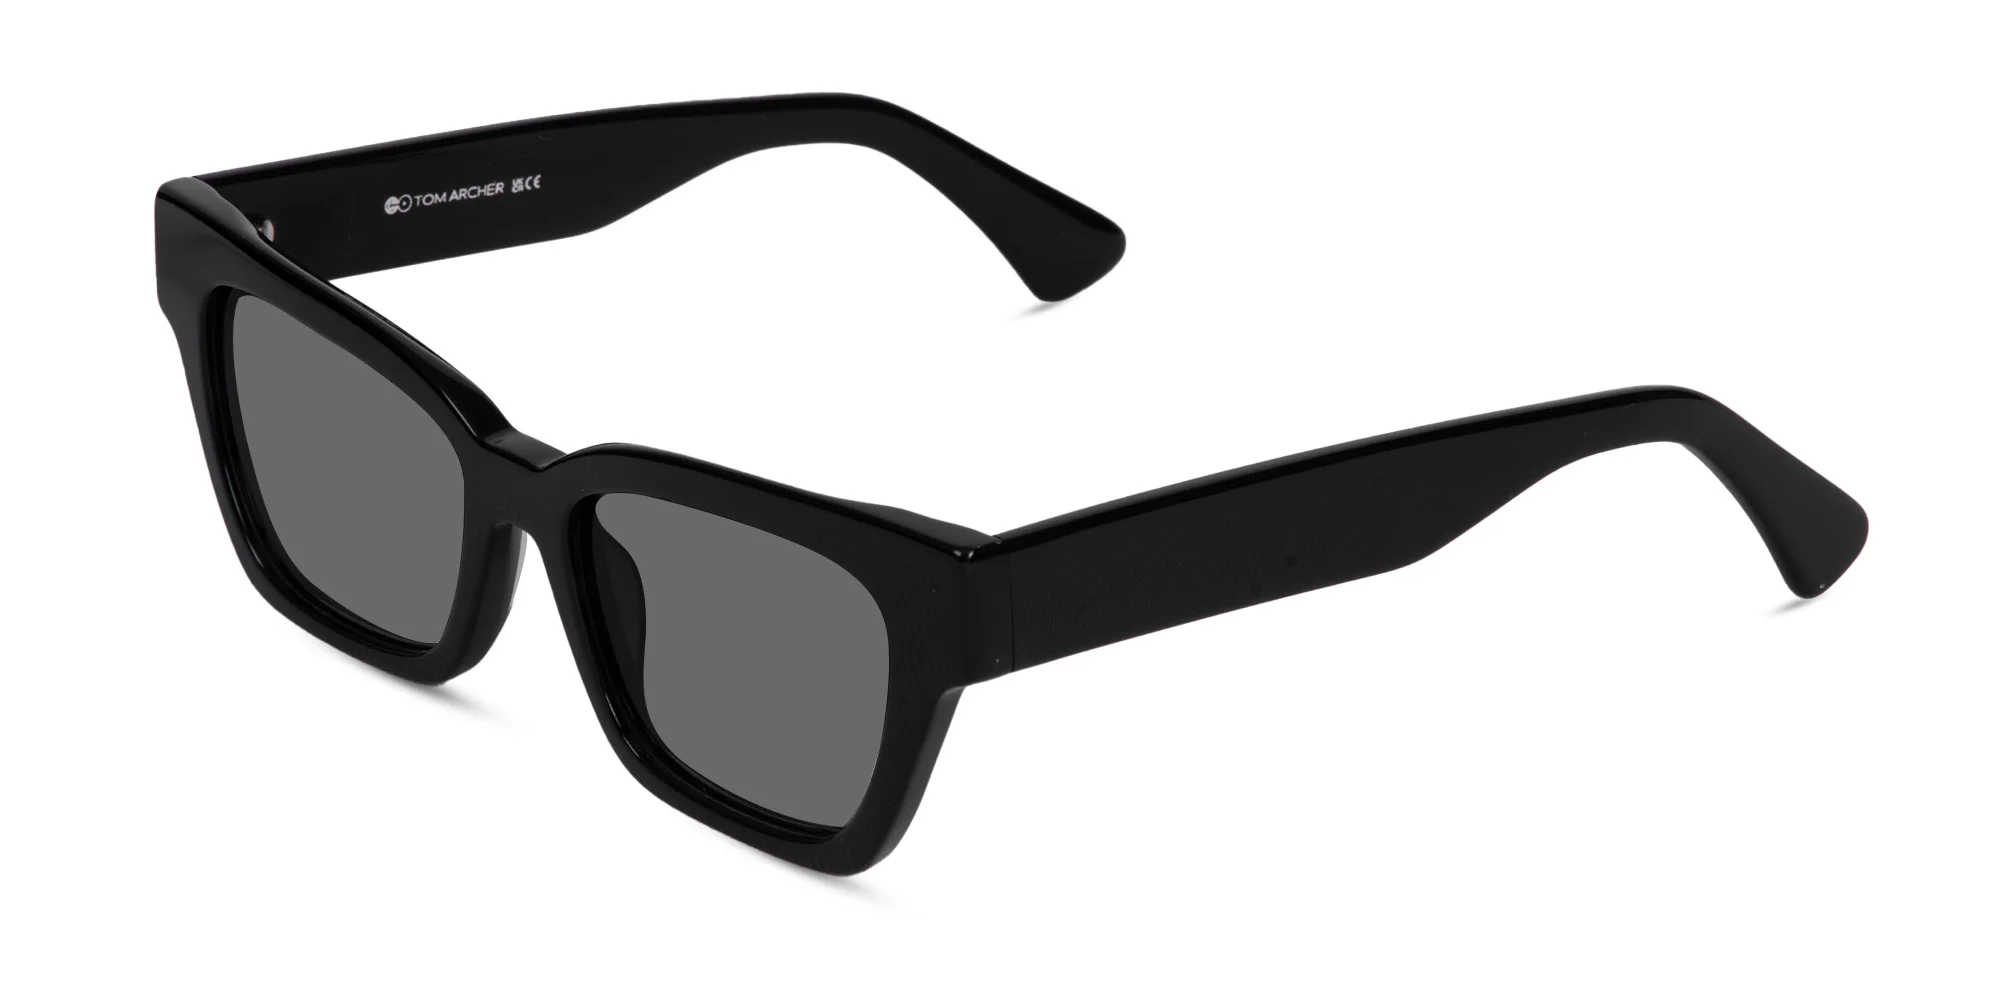 Cateye Square Sunglasses